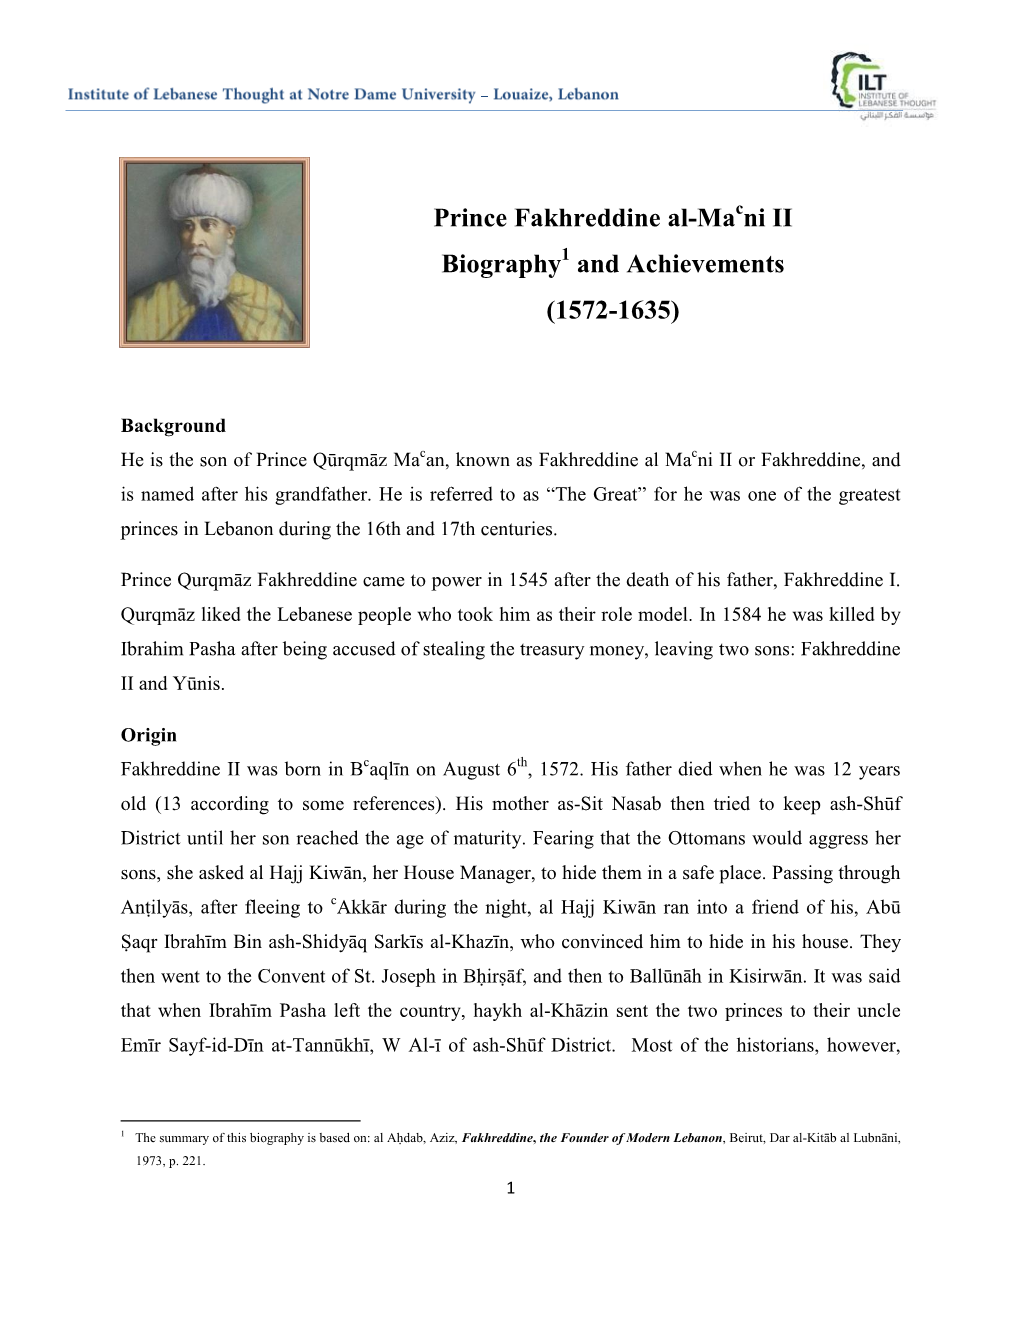 Prince Fakhreddine Al-Ma Ni II Biography and Achievements